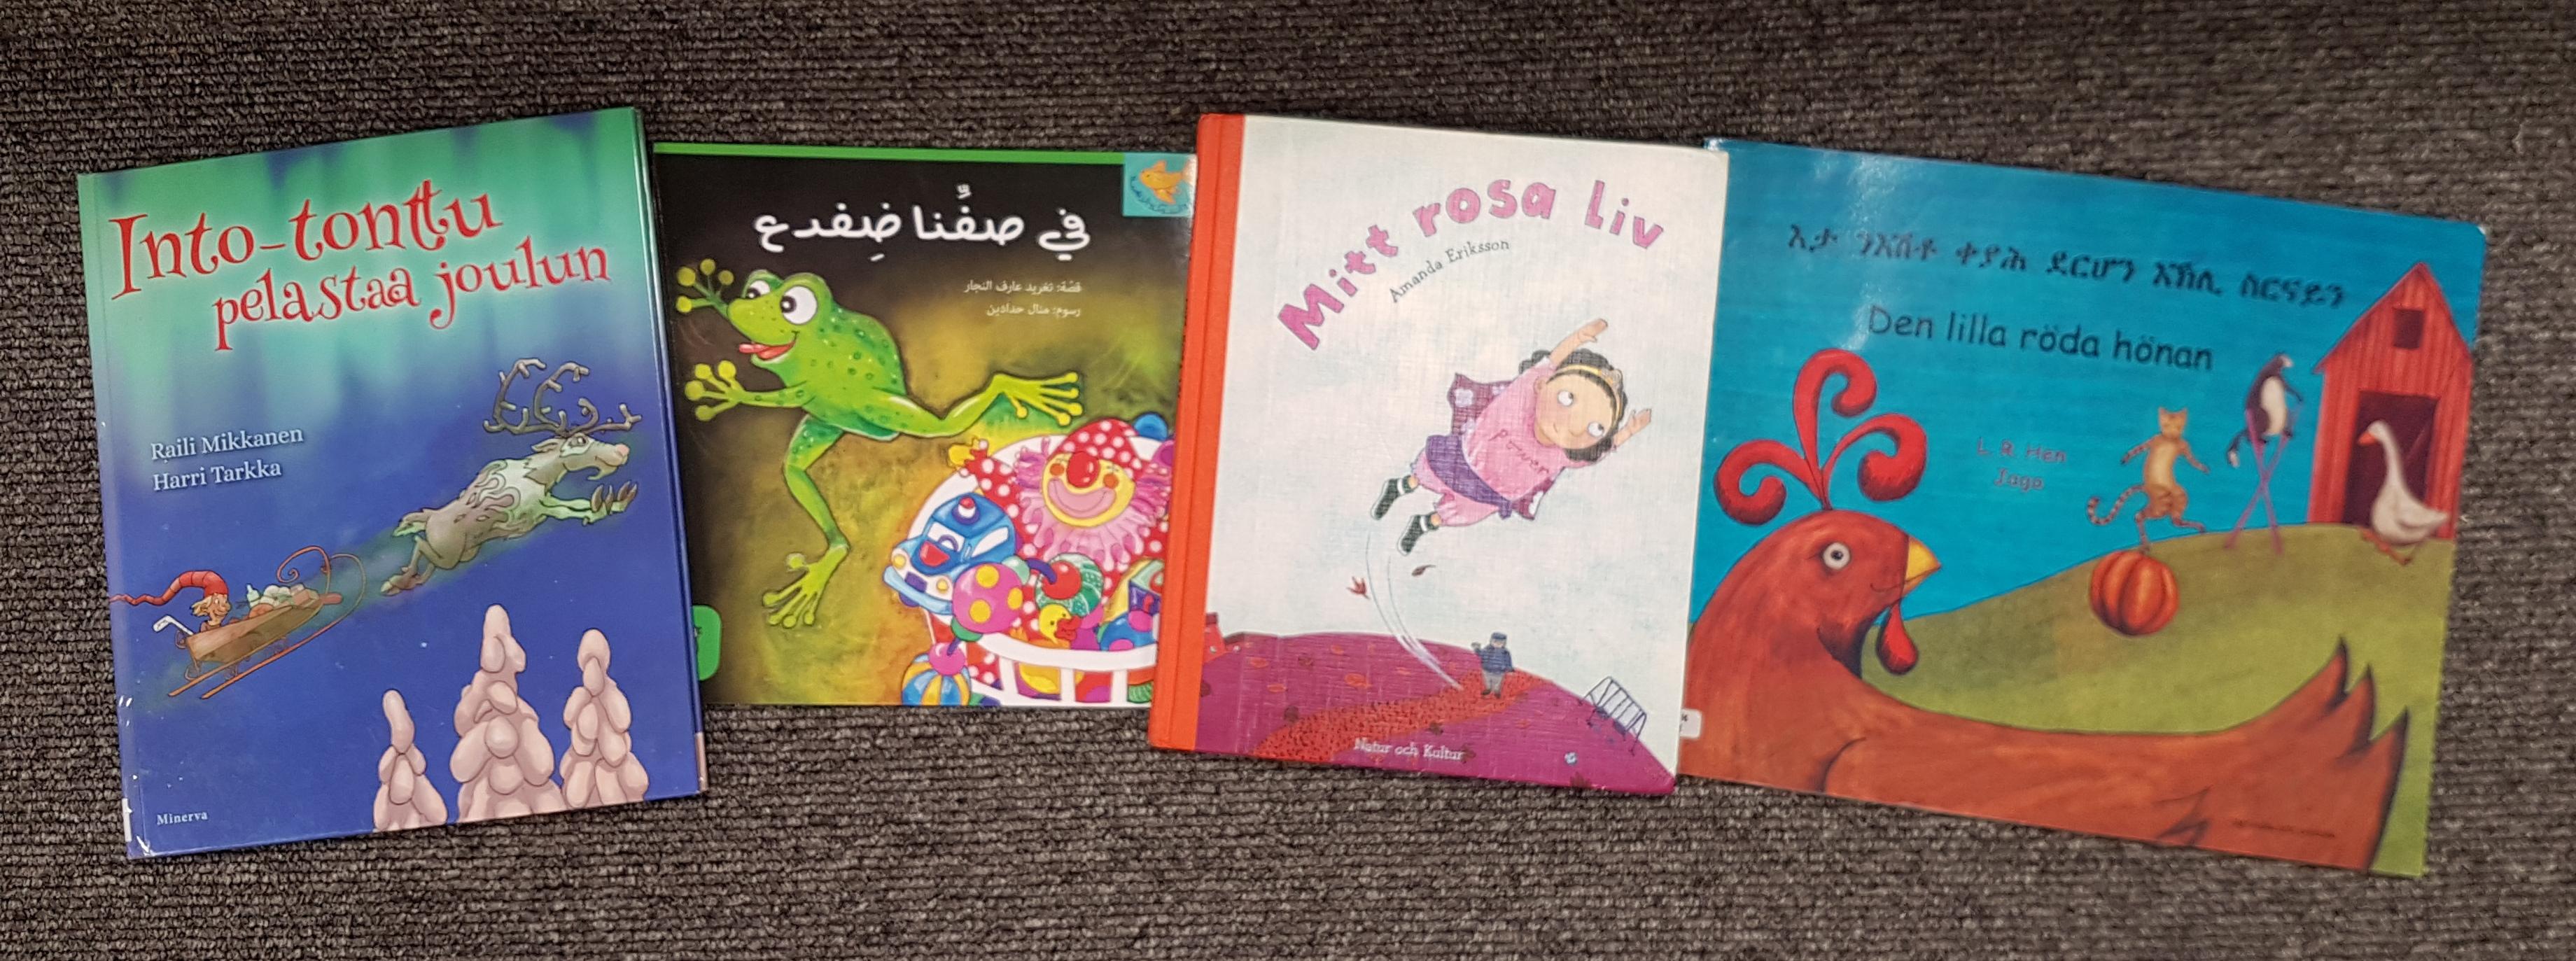 Fyra bilderböcker: en på finska, en på arabiska, en på svenska och en på tigrinska.